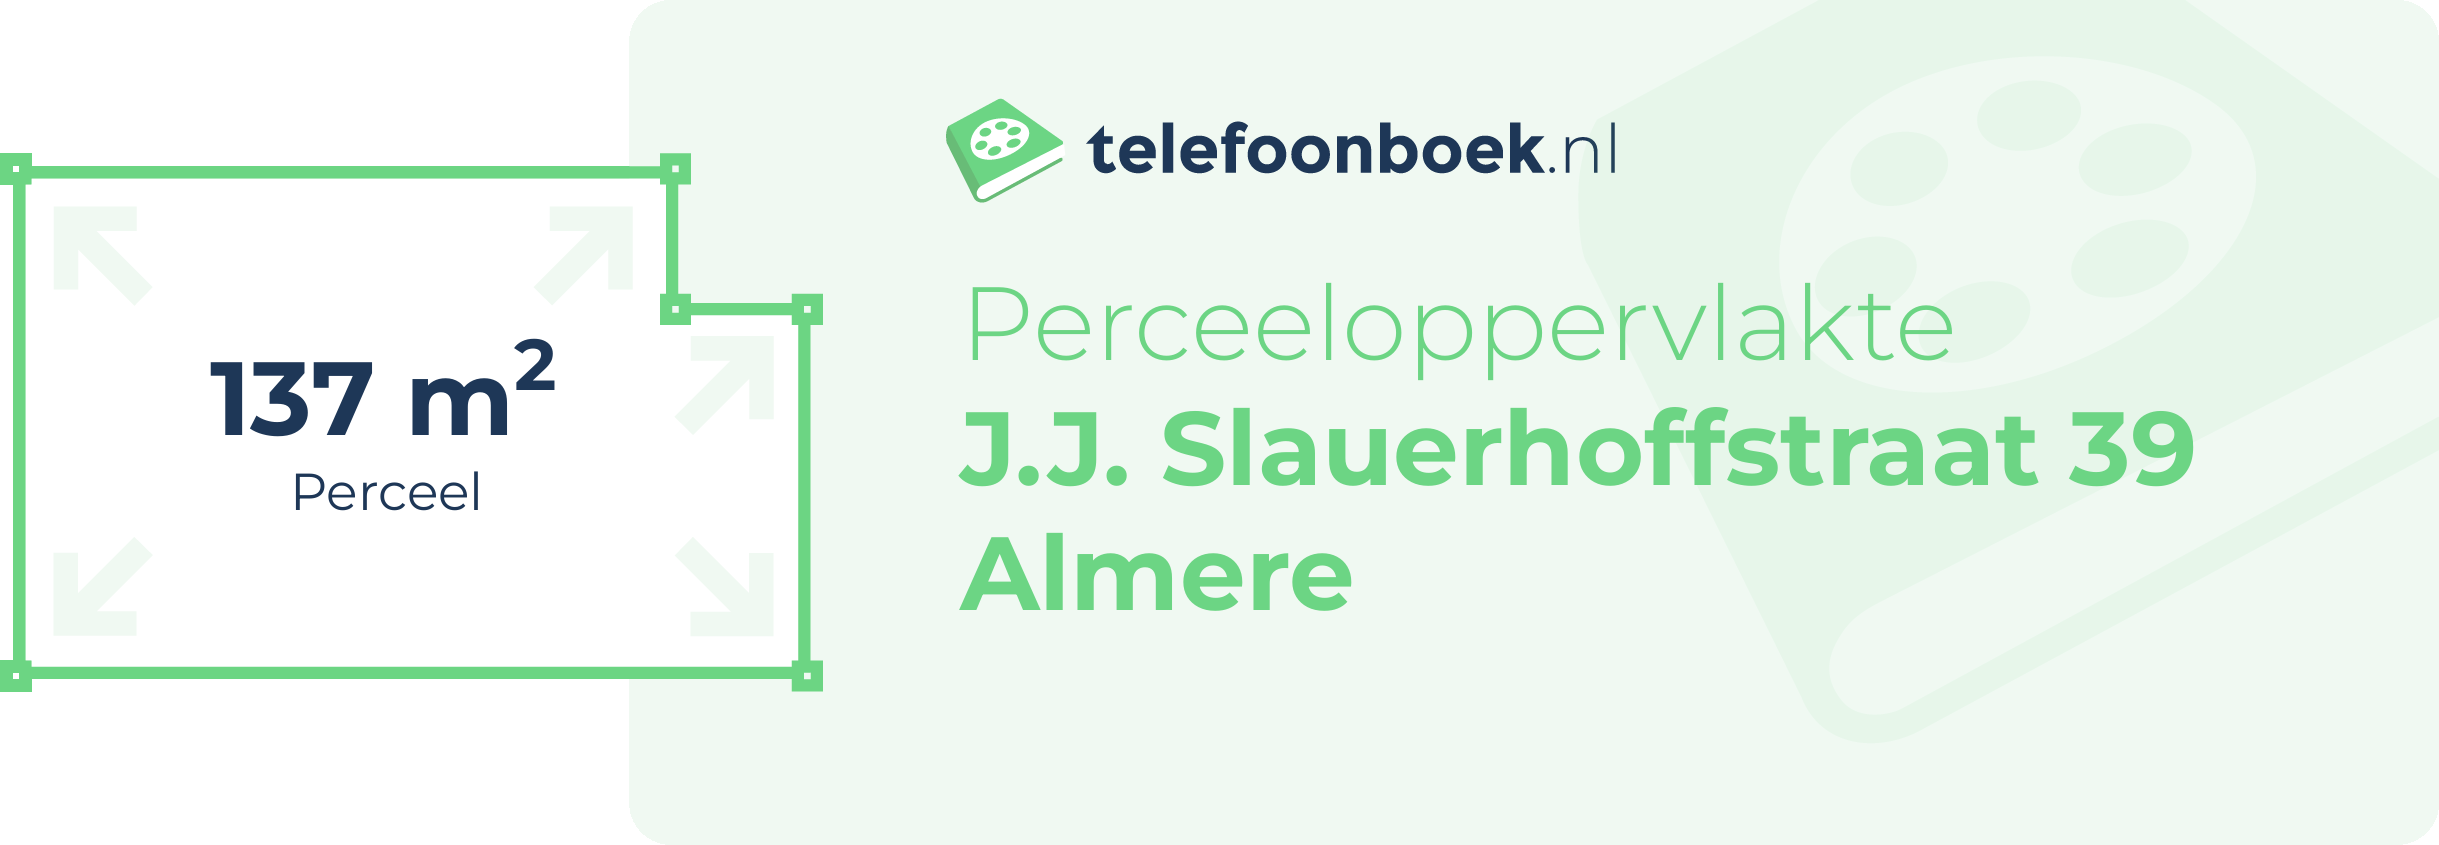 Perceeloppervlakte J.J. Slauerhoffstraat 39 Almere